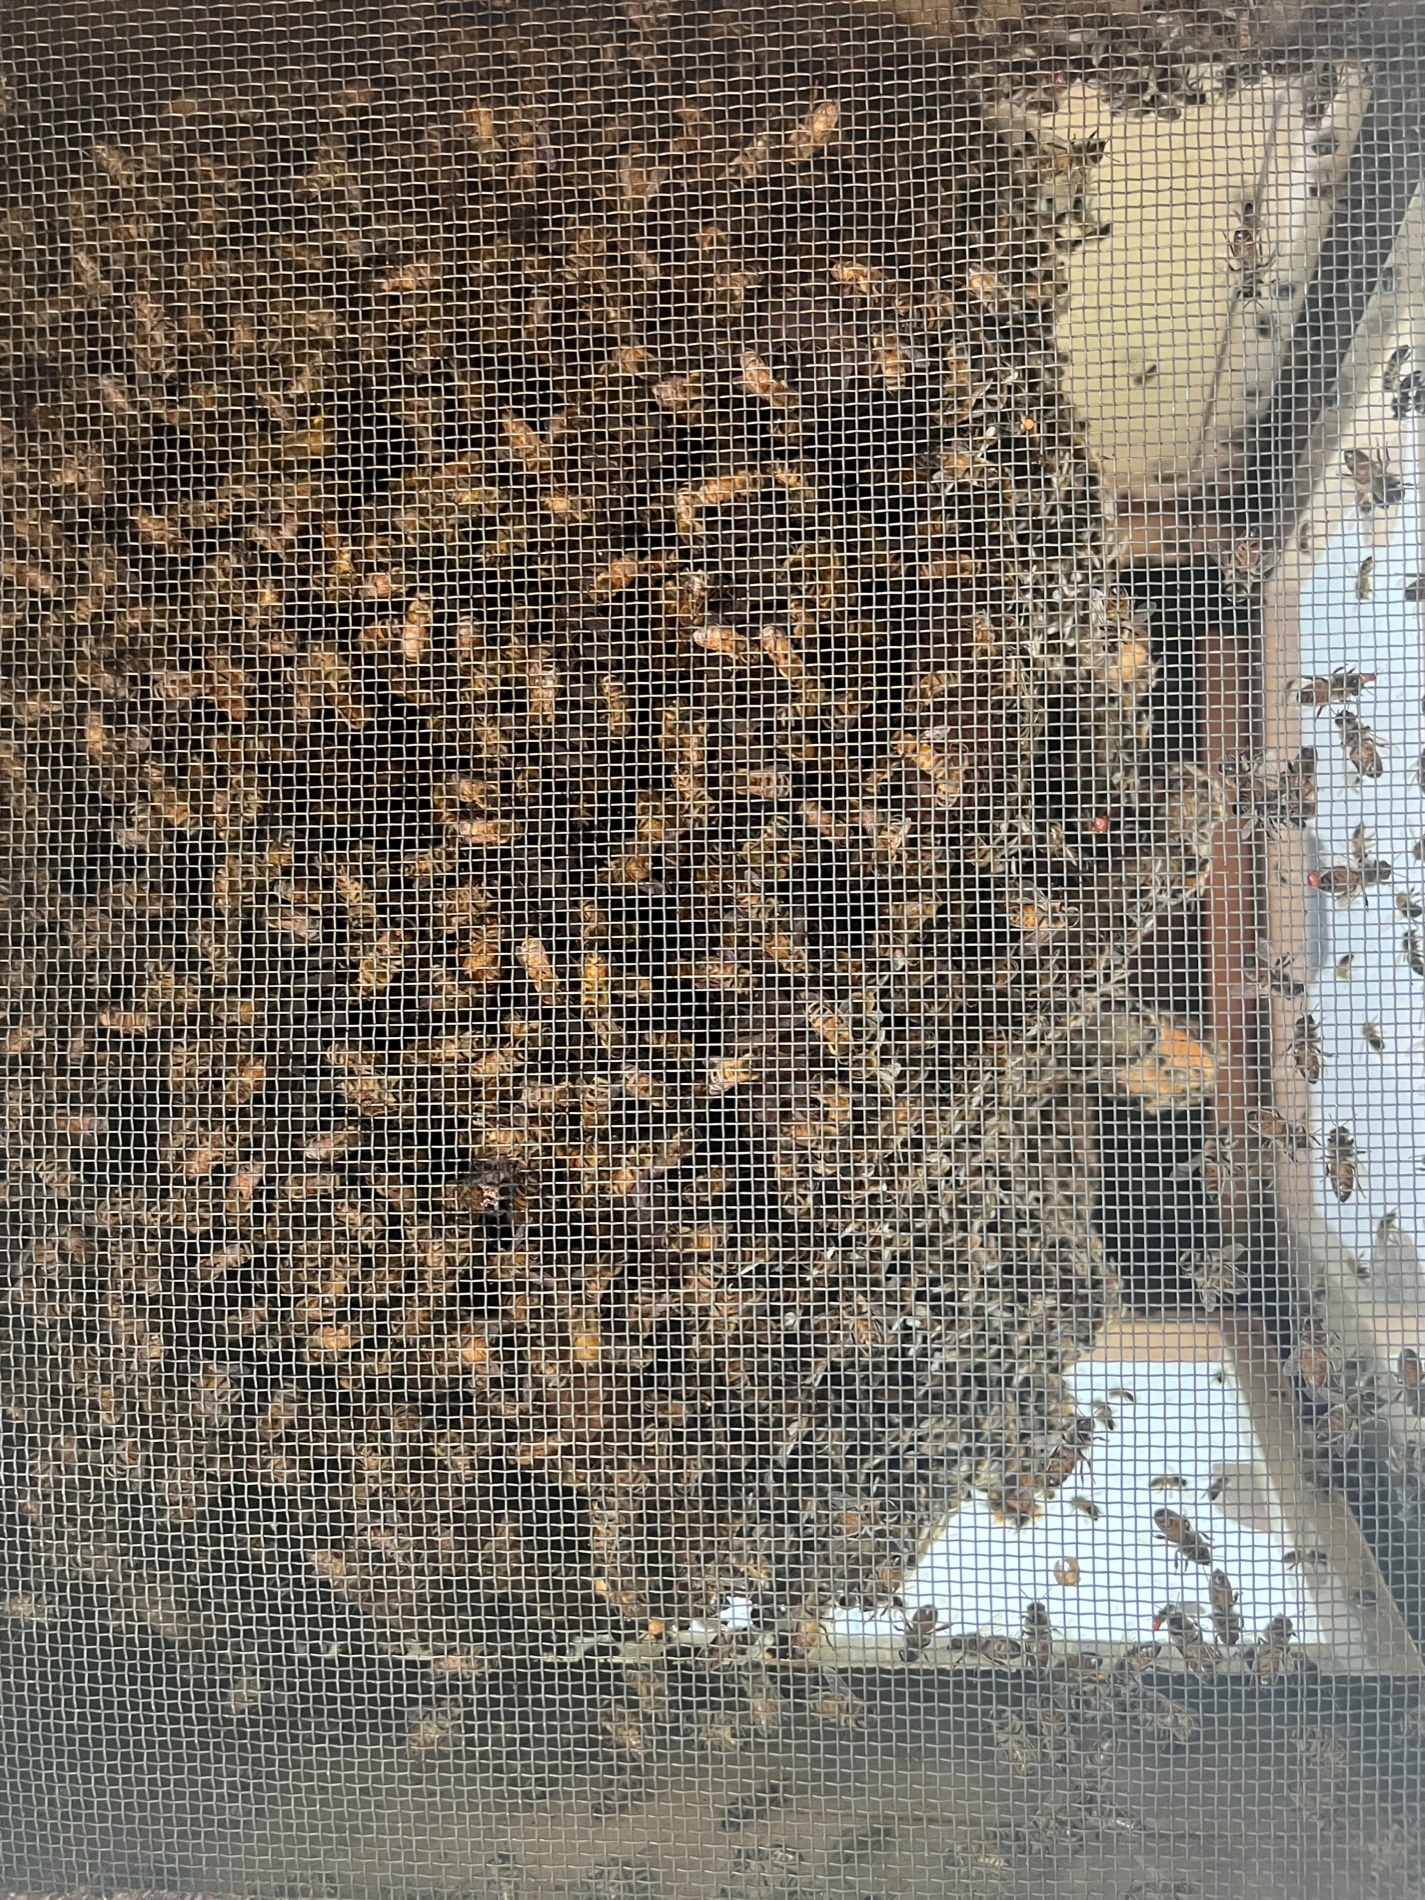 Giornata mondiale delle api, a La Magdeleine l'apiario del benessere